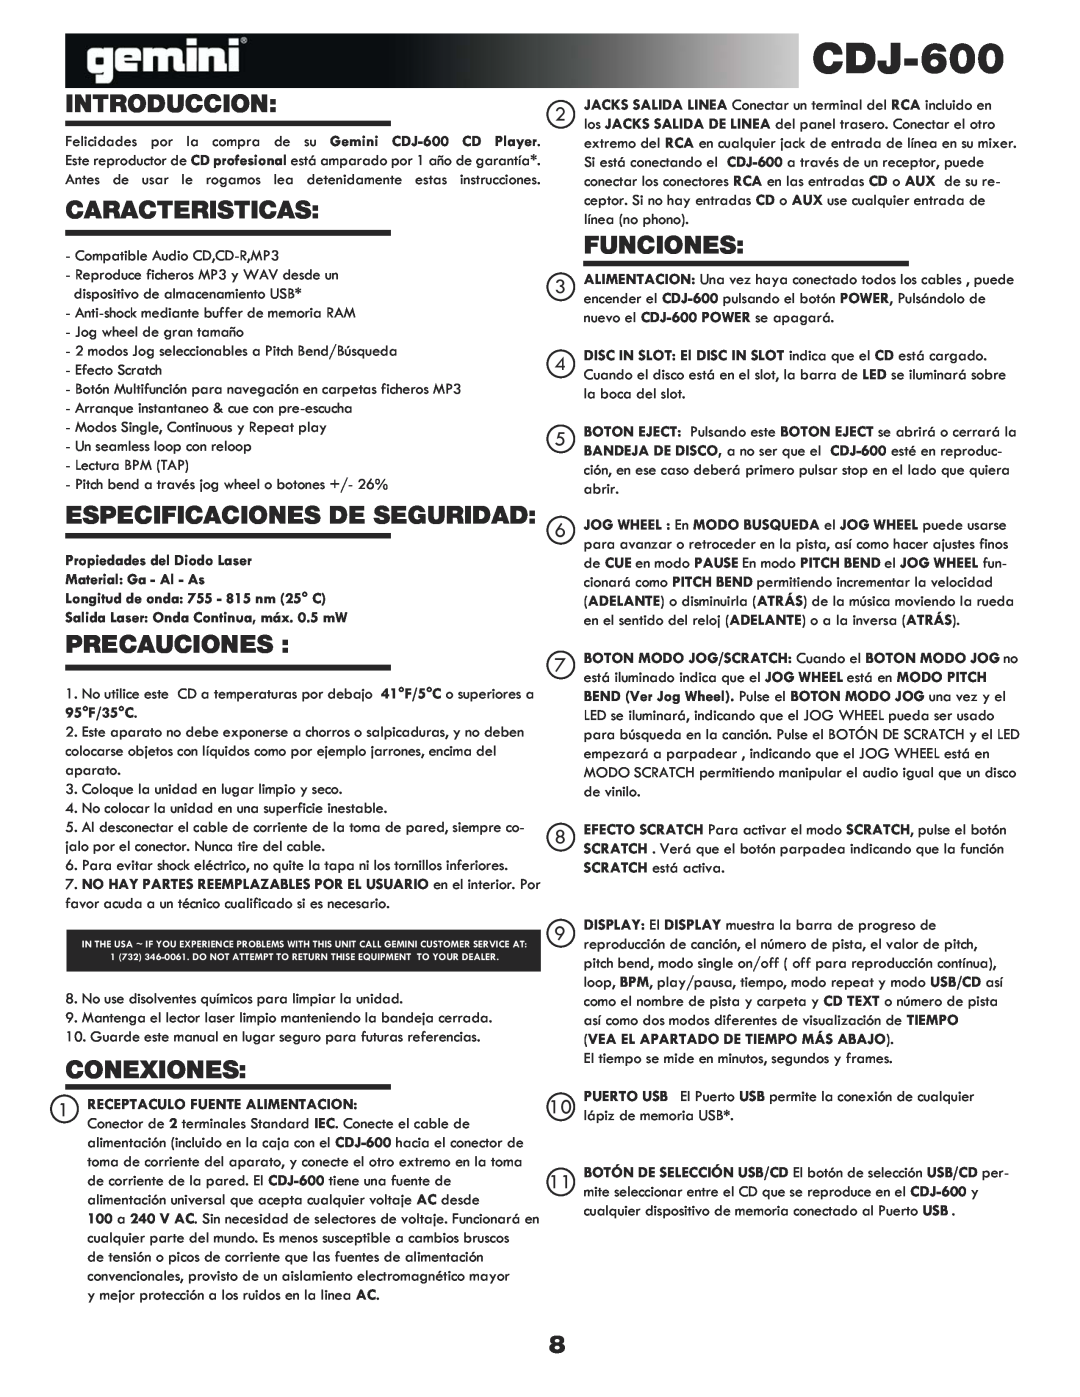 Gemini CDJ-600 manual Introduccion, Caracteristicas, Funciones, Especificaciones De Seguridad, Precauciones, Conexiones 